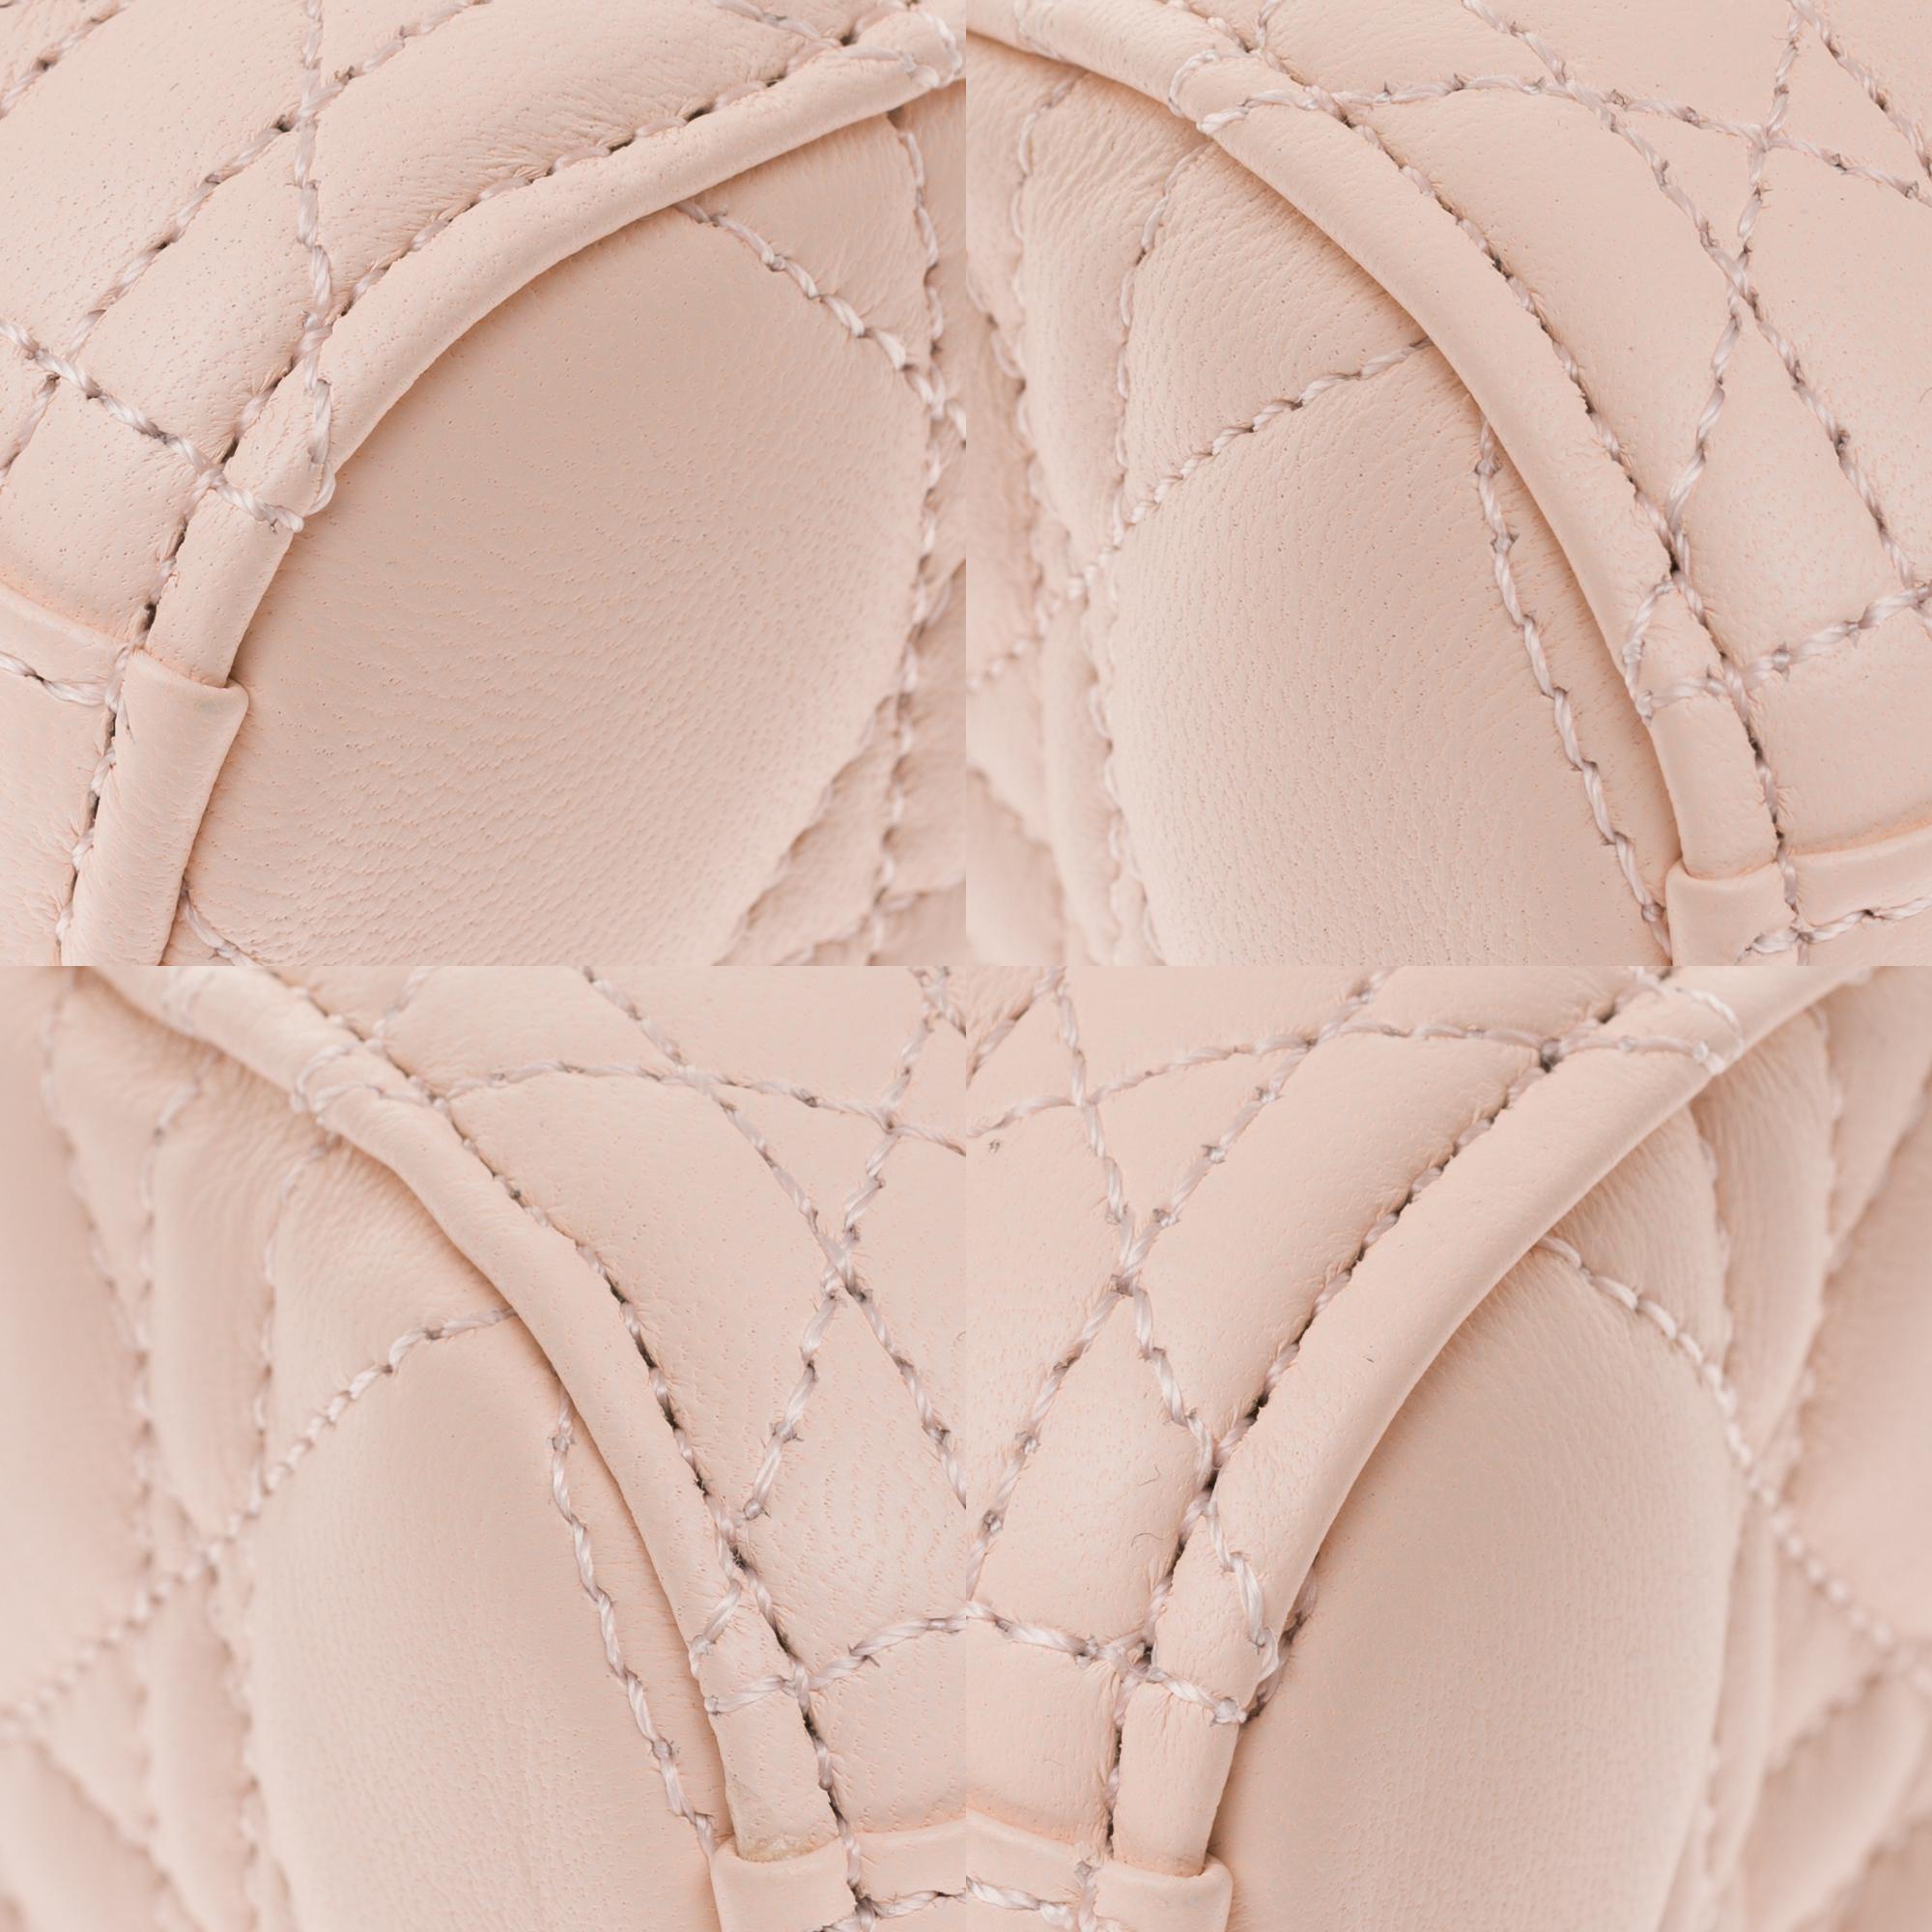  Christian Dior Lady Dior MM (Medium size) handbag in Pink cannage leather, GHW 4